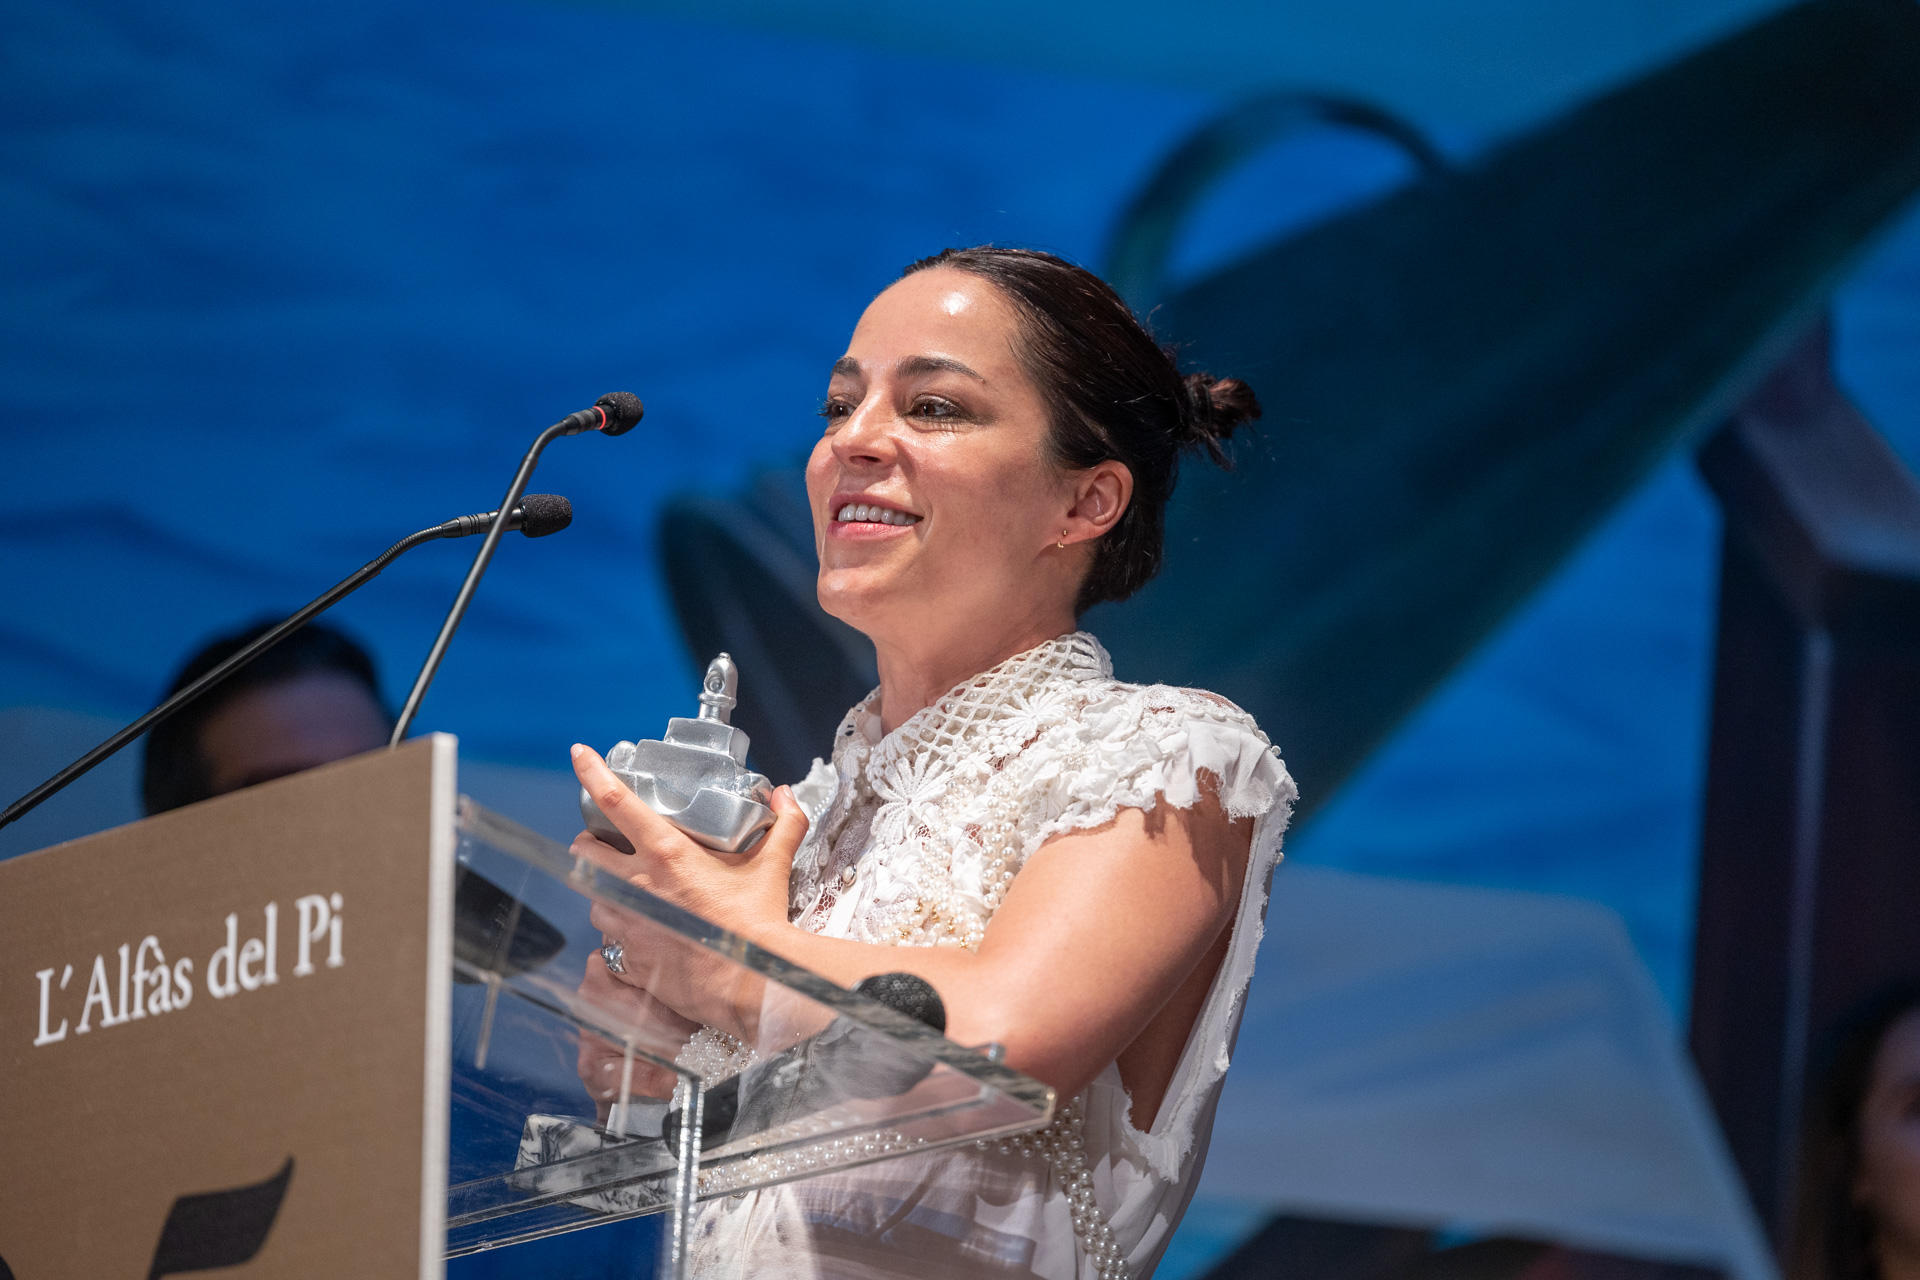 La directora Nata Moreno, en una imagen cedida por la organización.